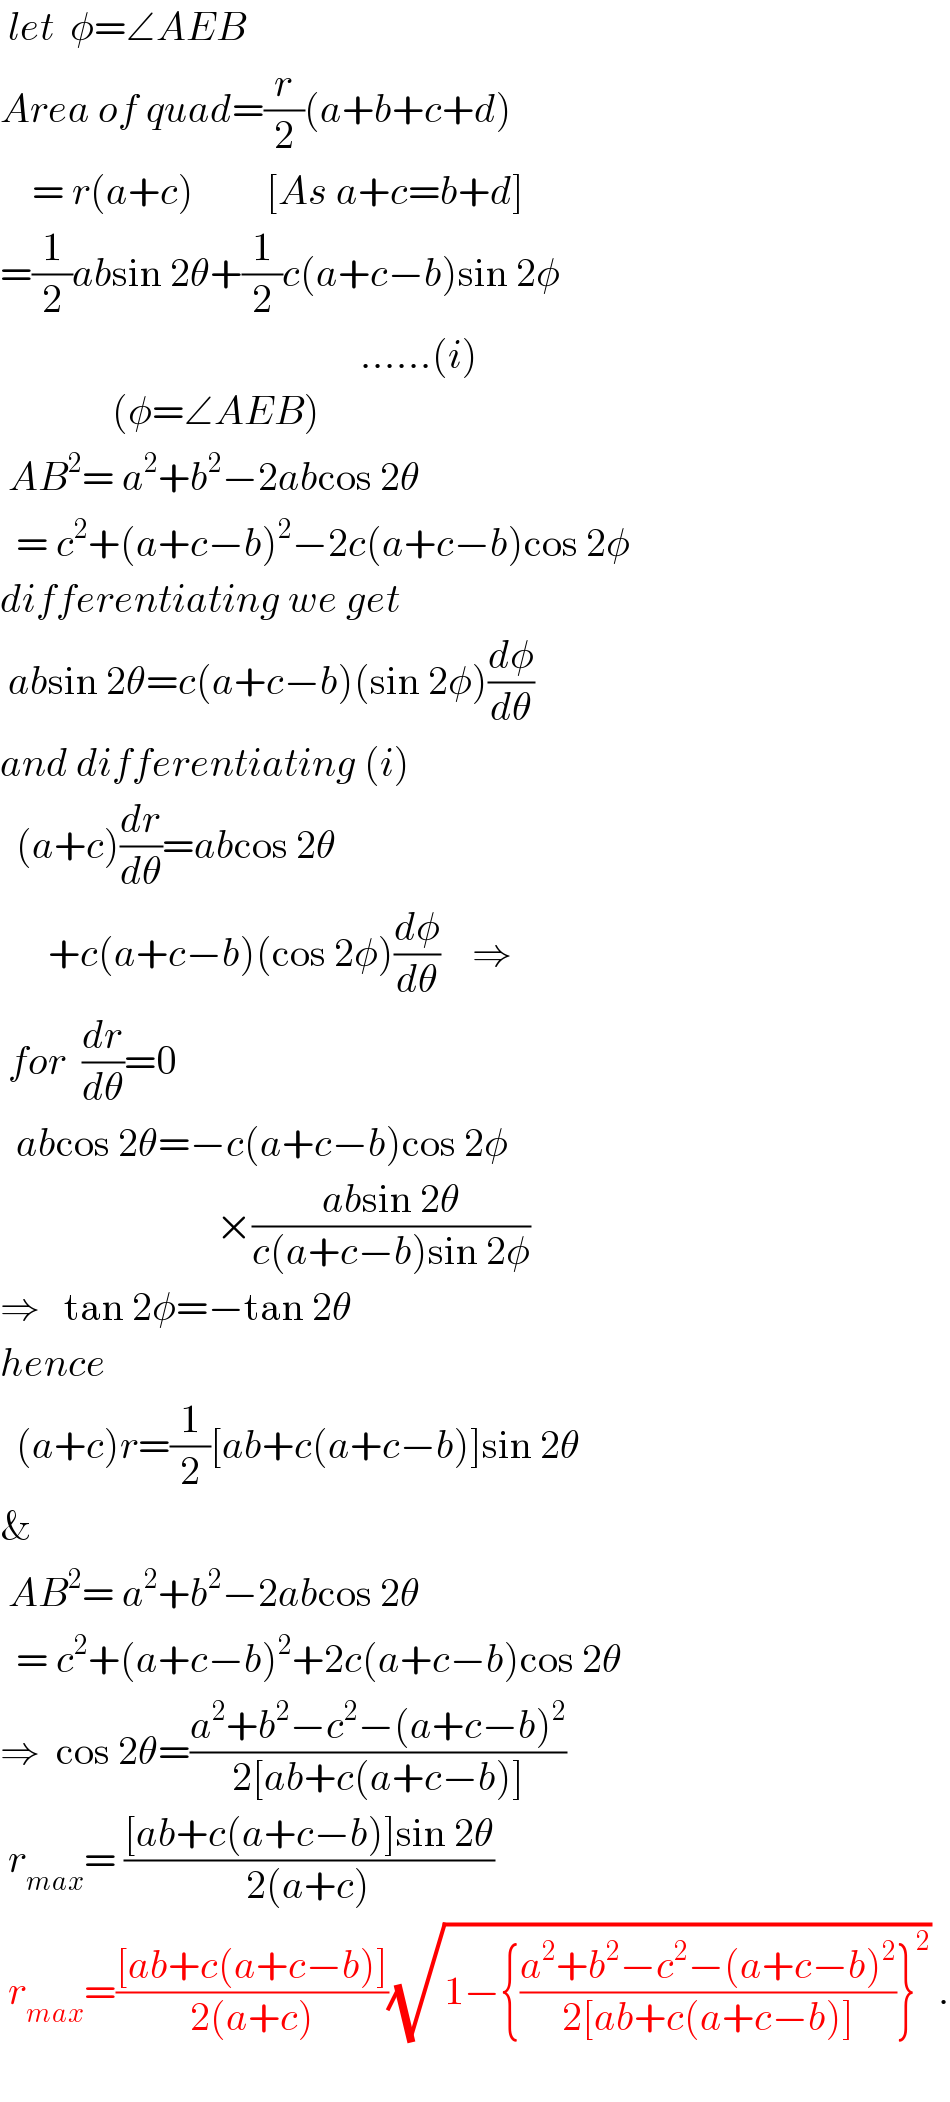  let  φ=∠AEB  Area of quad=(r/2)(a+b+c+d)      = r(a+c)         [As a+c=b+d]  =(1/2)absin 2θ+(1/2)c(a+c−b)sin 2φ                                               ......(i)                (φ=∠AEB)   AB^2 = a^2 +b^2 −2abcos 2θ    = c^2 +(a+c−b)^2 −2c(a+c−b)cos 2φ  differentiating we get   absin 2θ=c(a+c−b)(sin 2φ)(dφ/dθ)  and differentiating (i)    (a+c)(dr/dθ)=abcos 2θ        +c(a+c−b)(cos 2φ)(dφ/dθ)    ⇒   for  (dr/dθ)=0    abcos 2θ=−c(a+c−b)cos 2φ                             ×((absin 2θ)/(c(a+c−b)sin 2φ))  ⇒   tan 2φ=−tan 2θ  hence       (a+c)r=(1/2)[ab+c(a+c−b)]sin 2θ  &   AB^2 = a^2 +b^2 −2abcos 2θ    = c^2 +(a+c−b)^2 +2c(a+c−b)cos 2θ  ⇒  cos 2θ=((a^2 +b^2 −c^2 −(a+c−b)^2 )/(2[ab+c(a+c−b)]))   r_(max) = (([ab+c(a+c−b)]sin 2θ)/(2(a+c)))   r_(max) =(([ab+c(a+c−b)])/(2(a+c)))(√(1−{((a^2 +b^2 −c^2 −(a+c−b)^2 )/(2[ab+c(a+c−b)]))}^2 )) .    